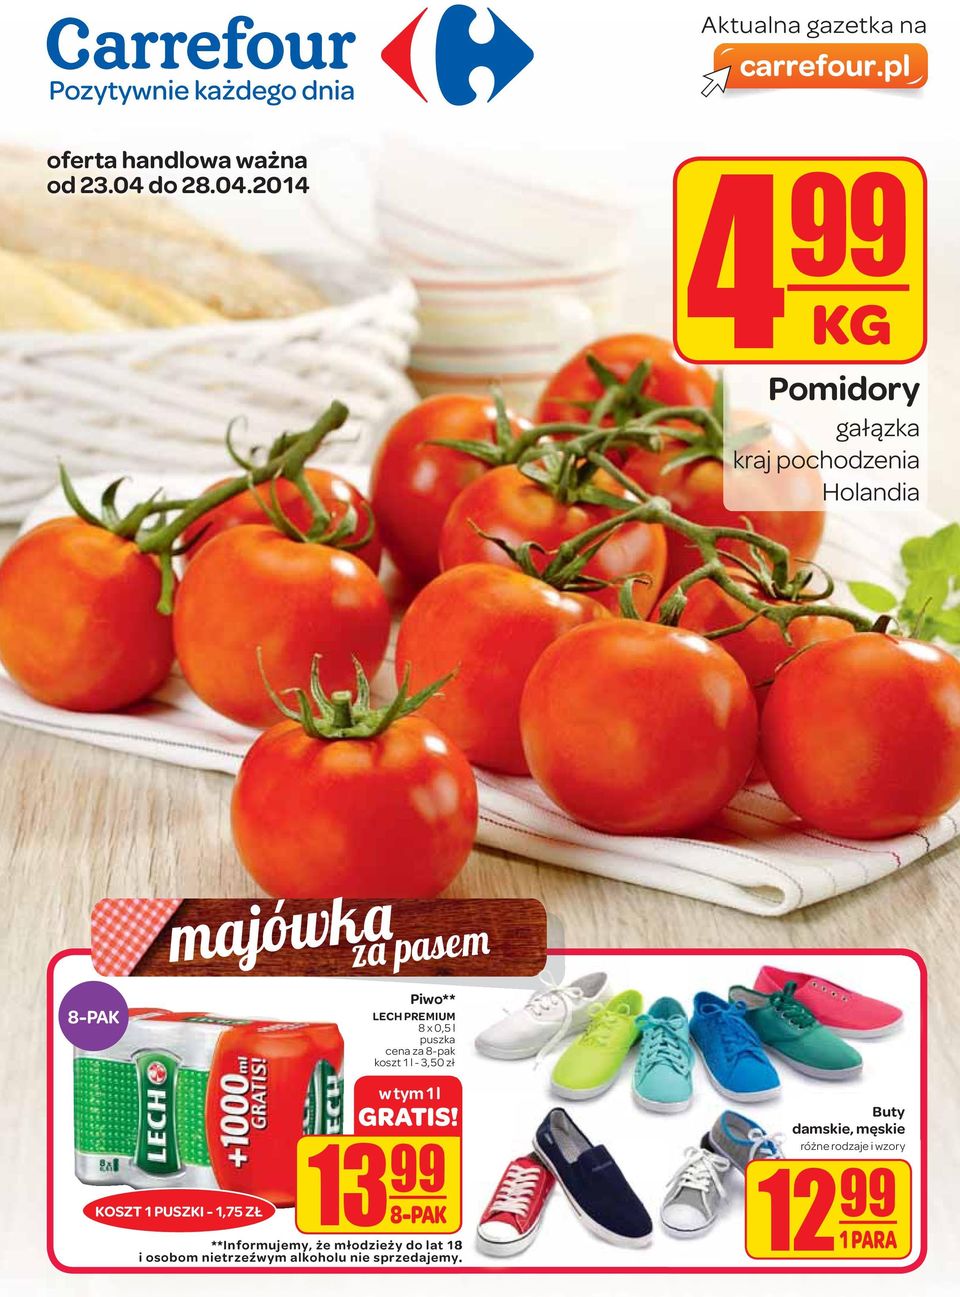 2014 4 99 Pomidory gałązka kraj pochodzenia Holandia 8-PAK majówka za pasem LECH PREMIUM 8 x